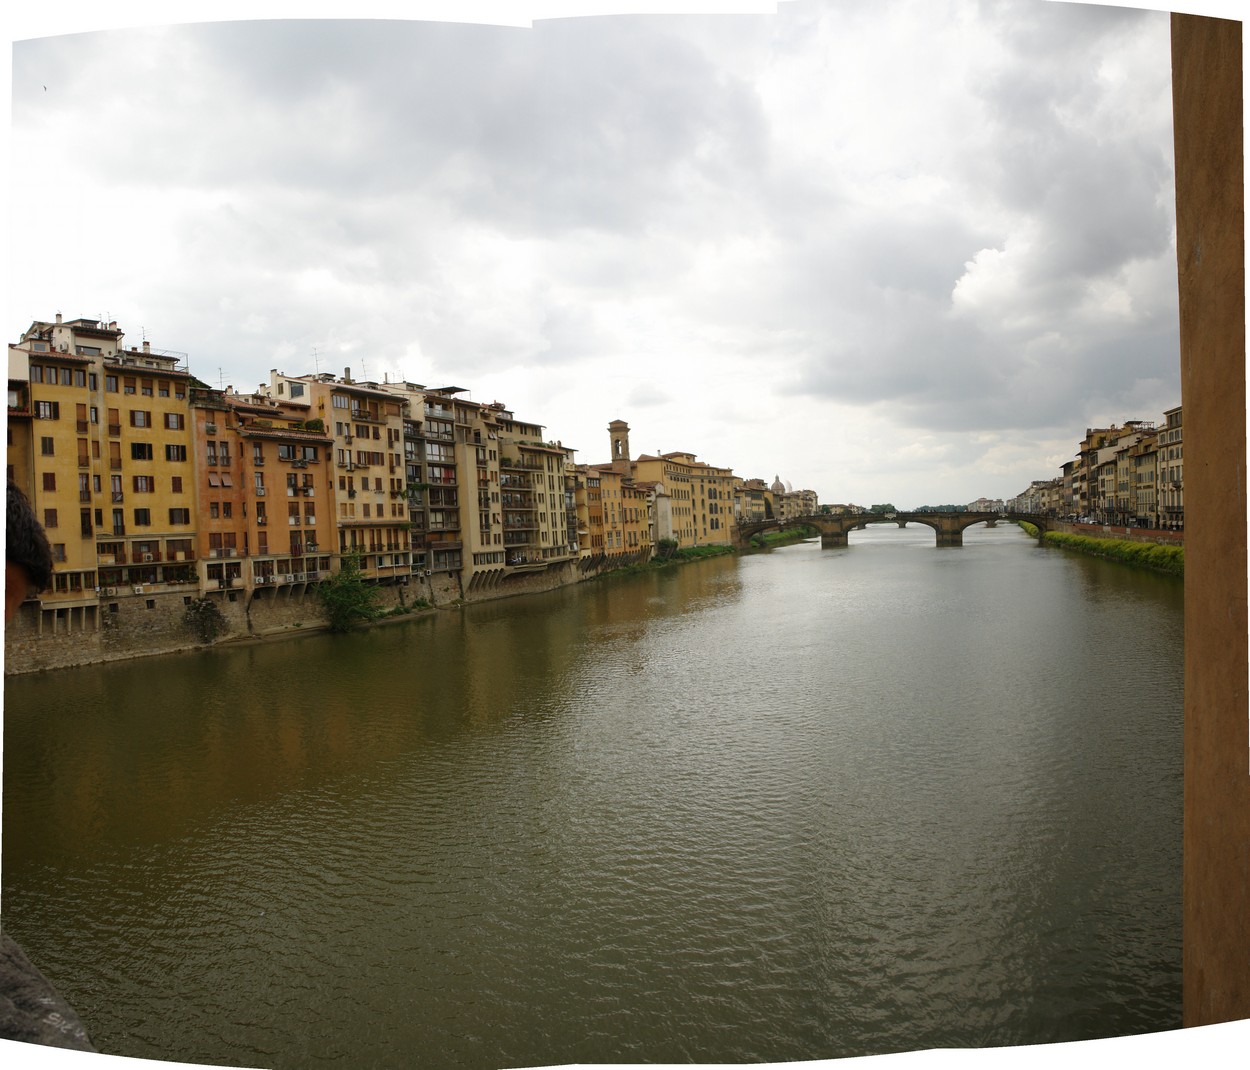 Florenz - Arno